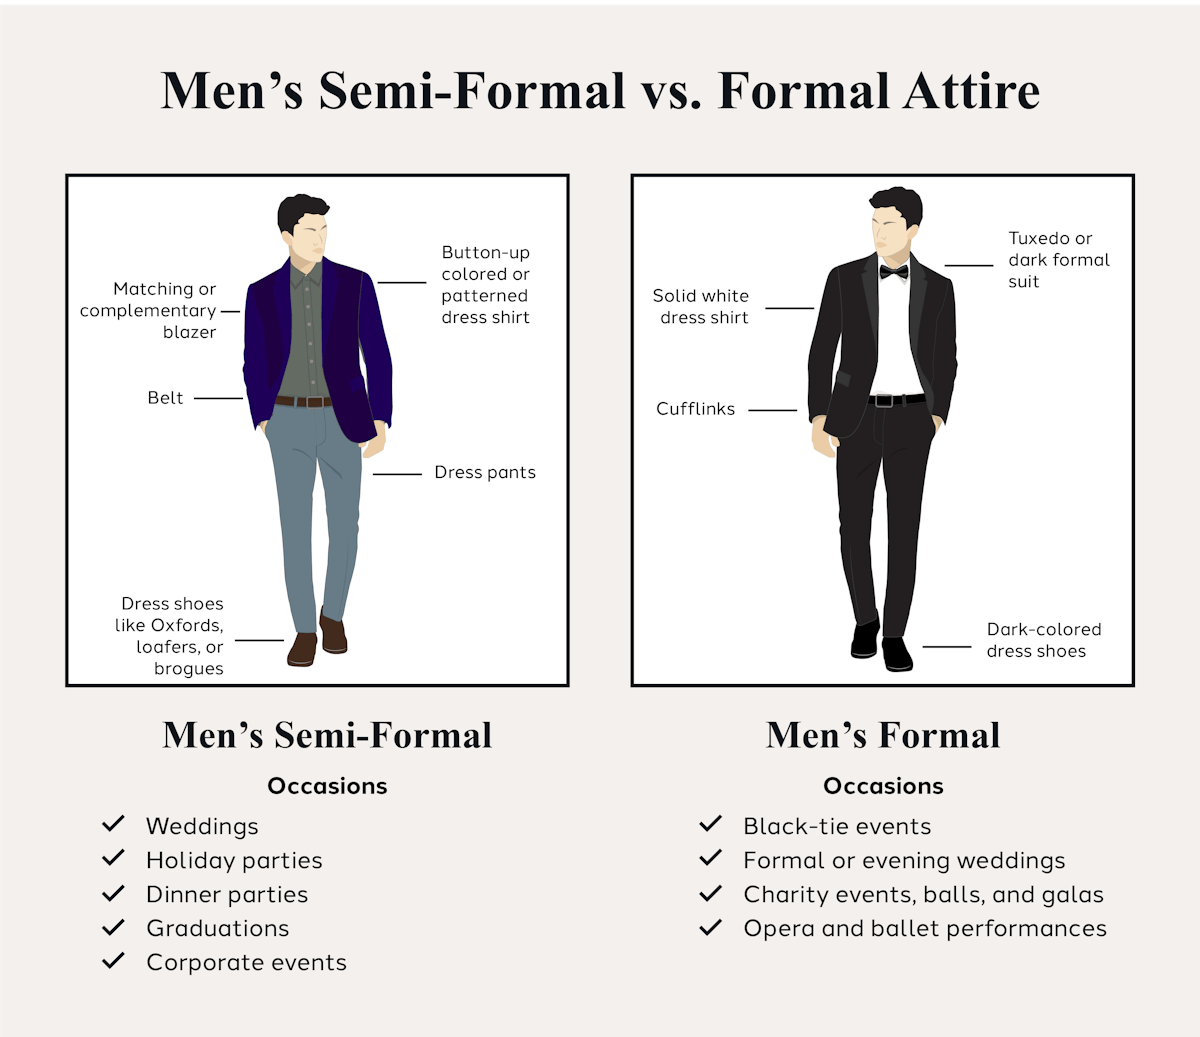 Men’s semi-formal vs formal attire